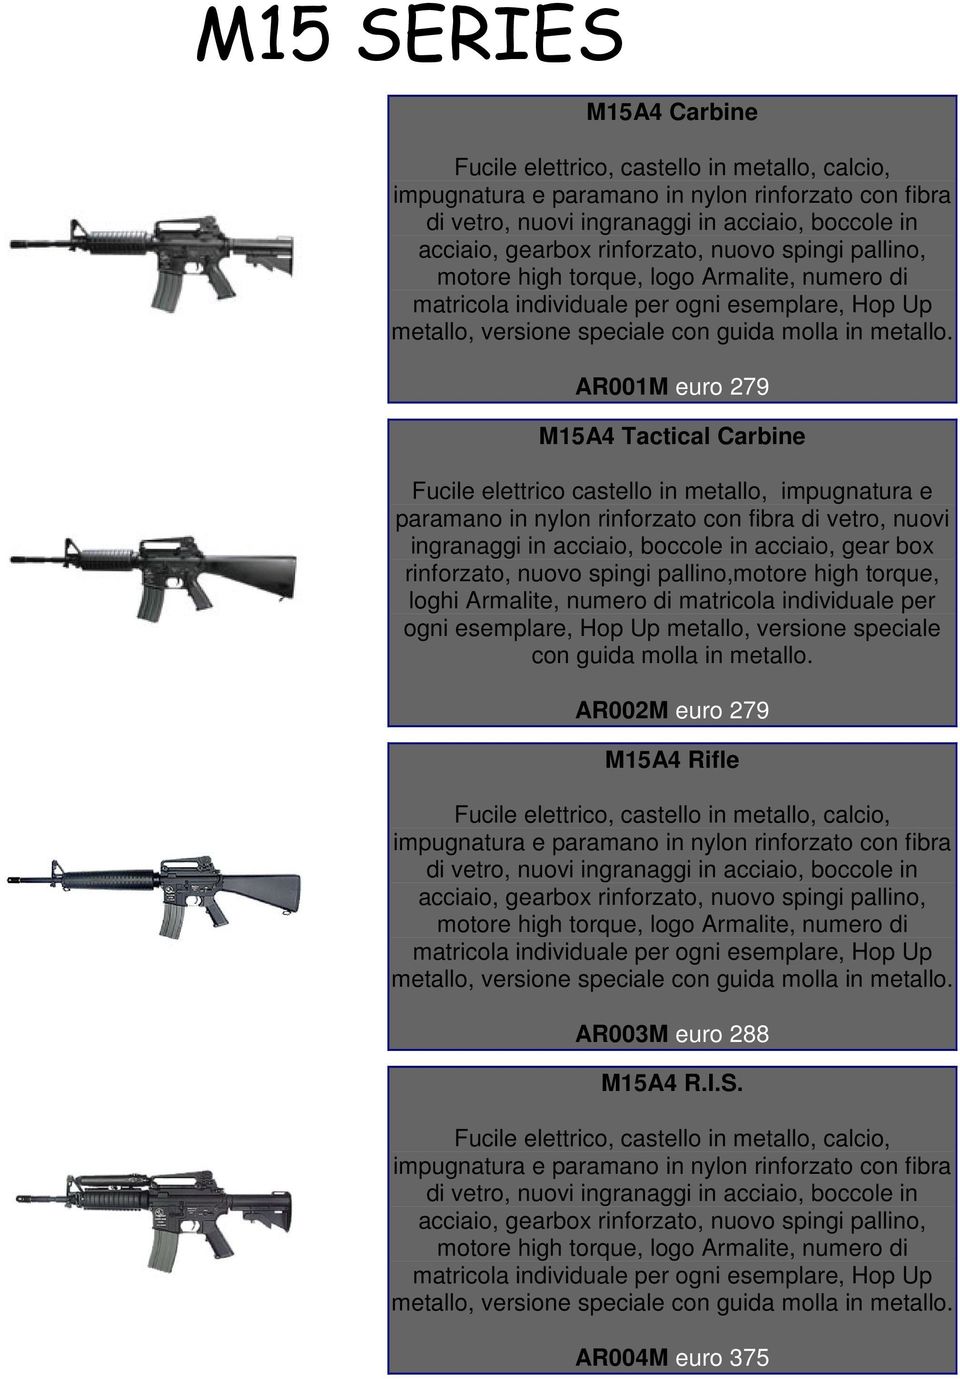 AR001M euro 279 M15A4 Tactical Carbine Fucile elettrico castello in metallo, impugnatura e paramano in nylon rinforzato con fibra di vetro, nuovi ingranaggi in acciaio, boccole in acciaio, gear box